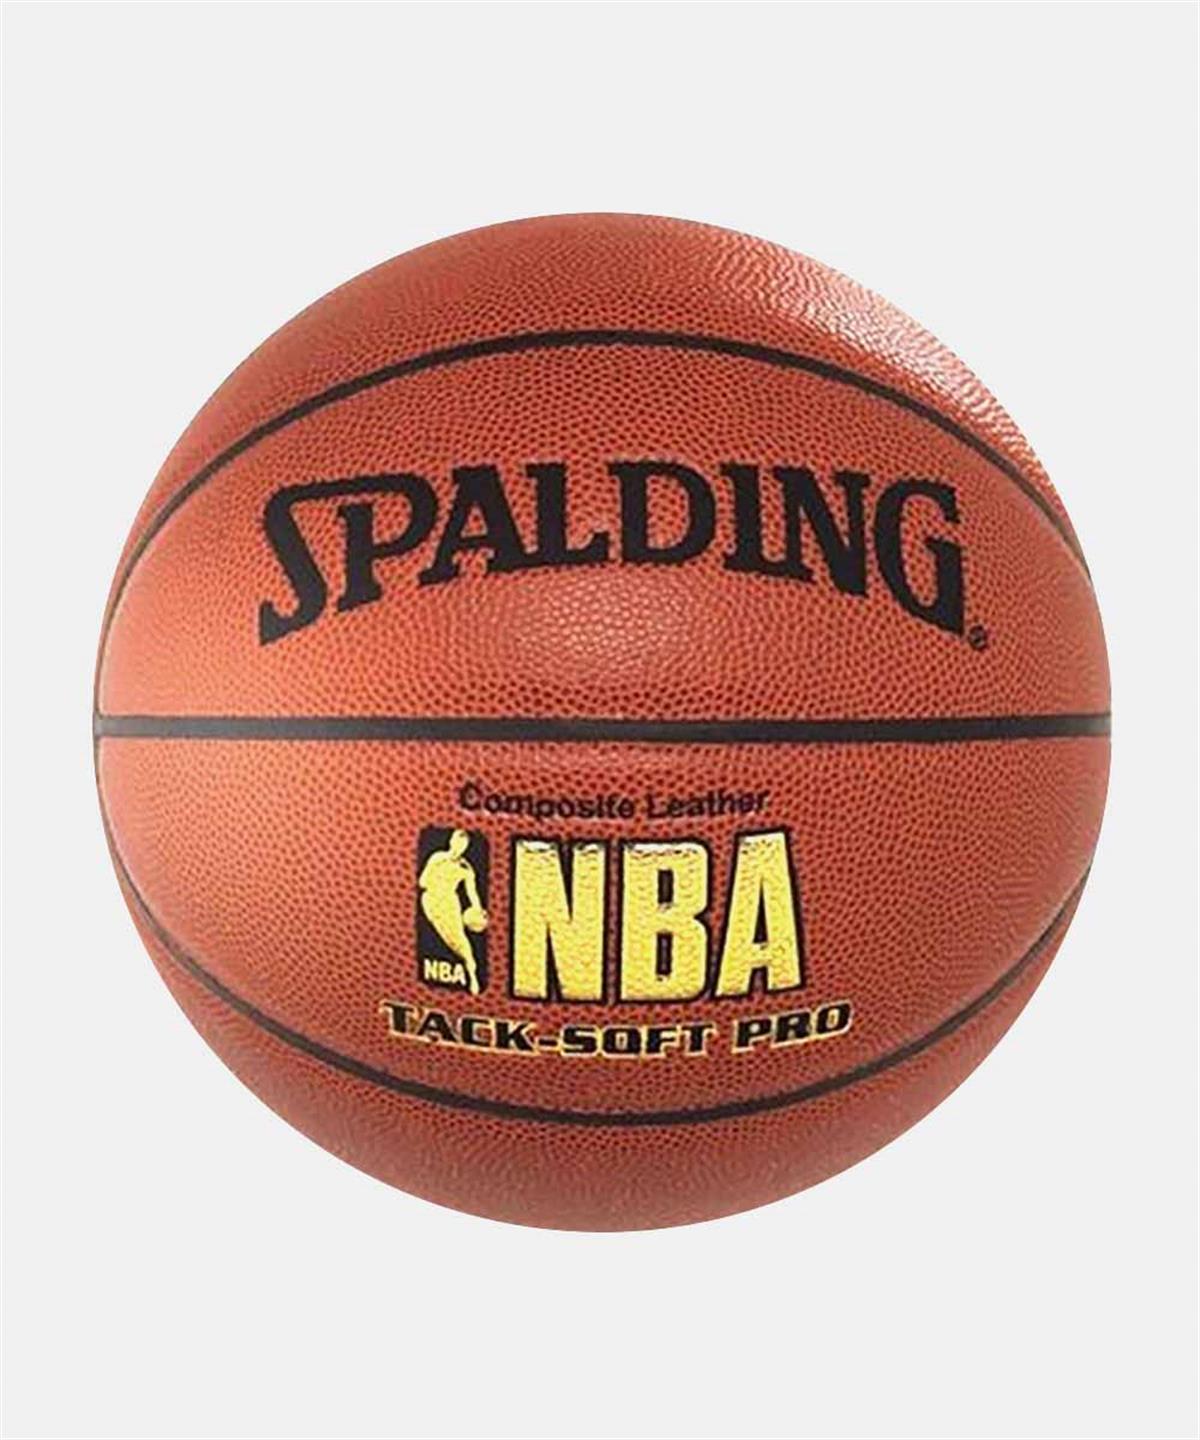 Spalding NBA Tacksoft Basketbol Topu No:7 | bayspor.com